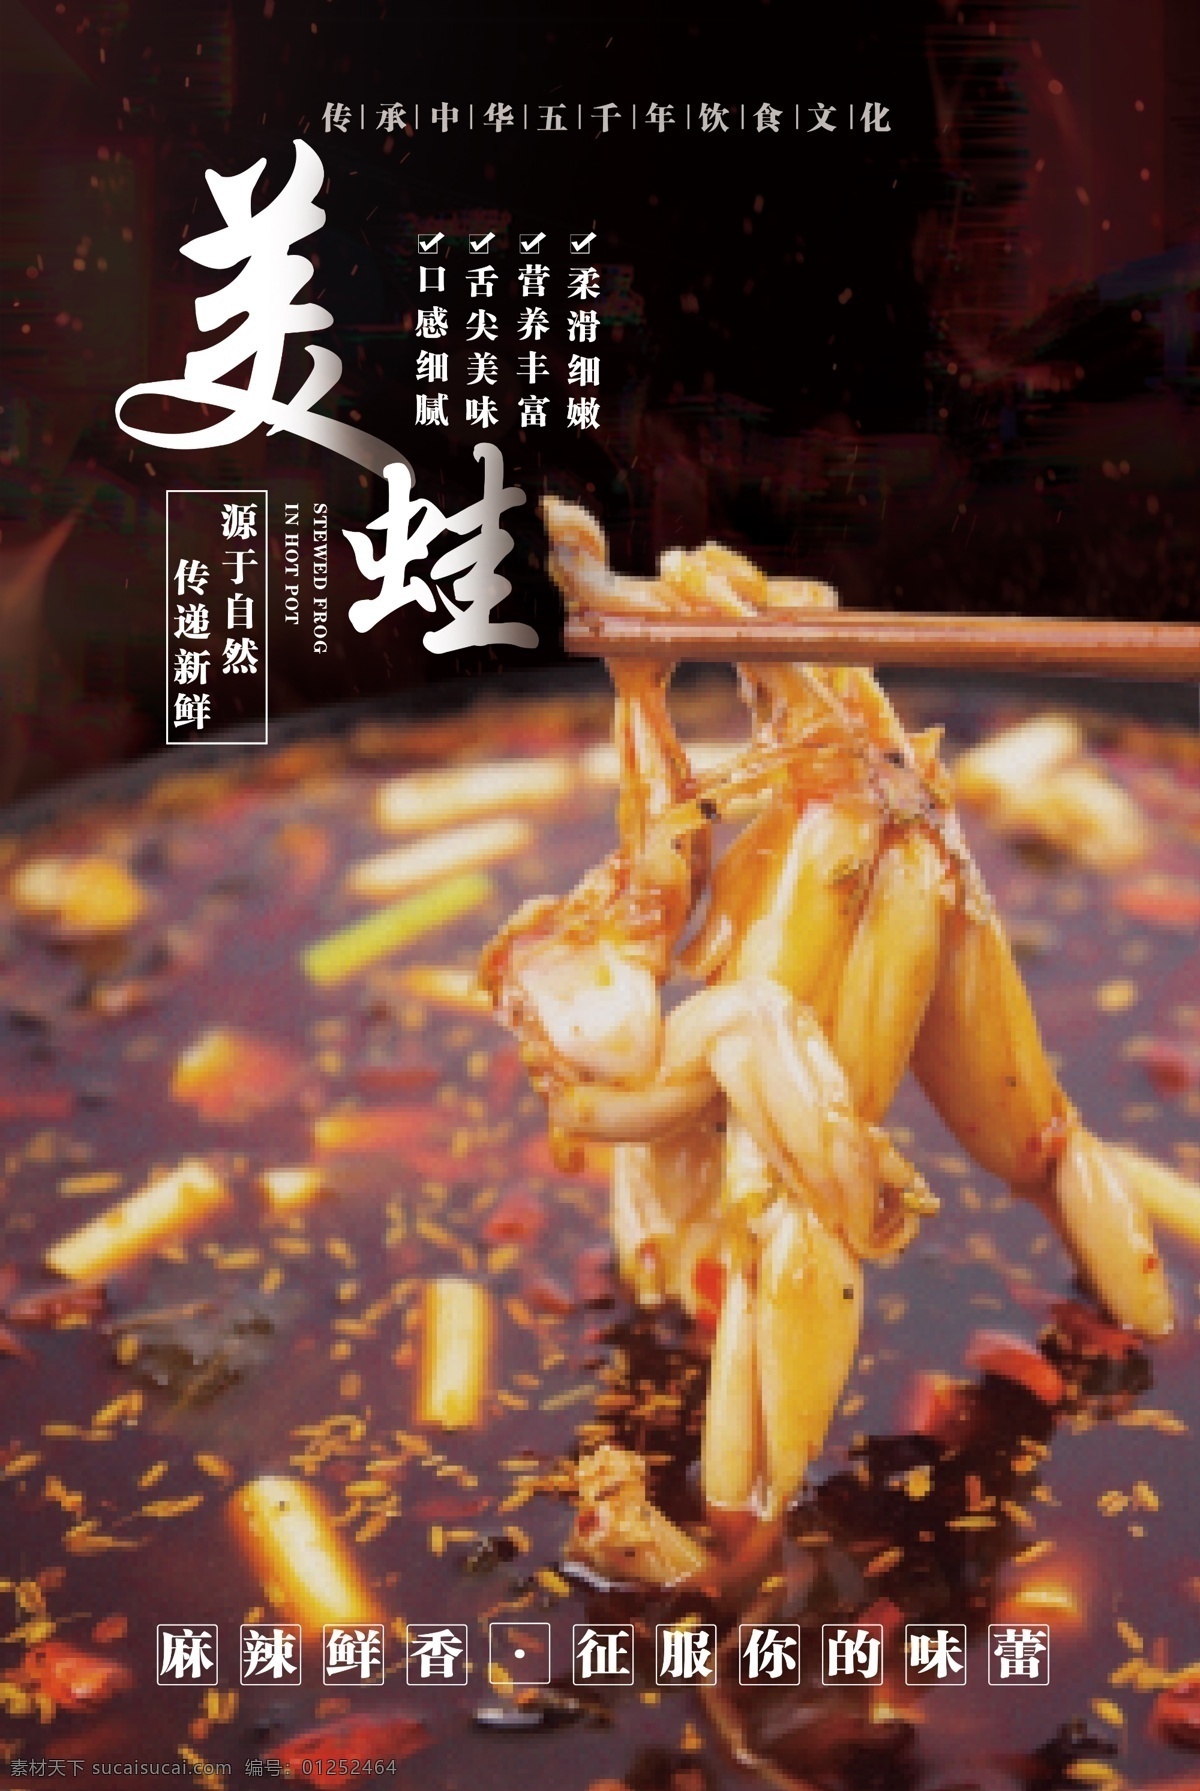 美食 宣传海报 美蛙 宣传 海报 火锅 重庆 排版 传统